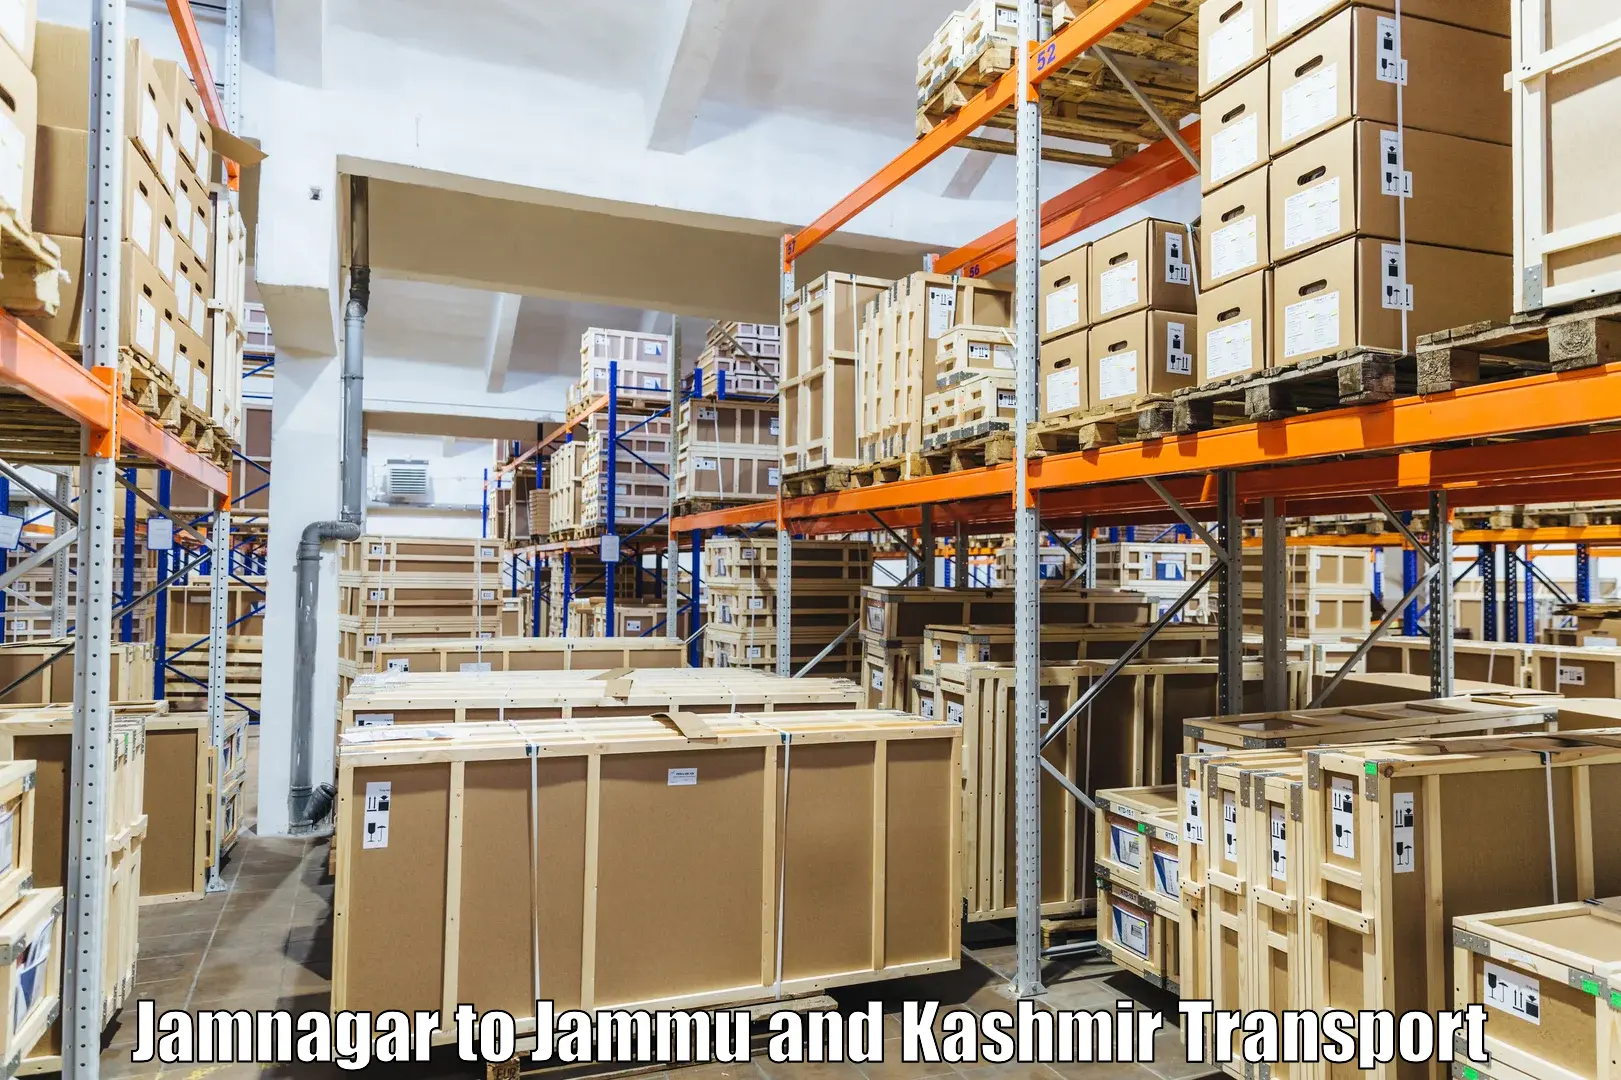 Transport services Jamnagar to Jammu and Kashmir